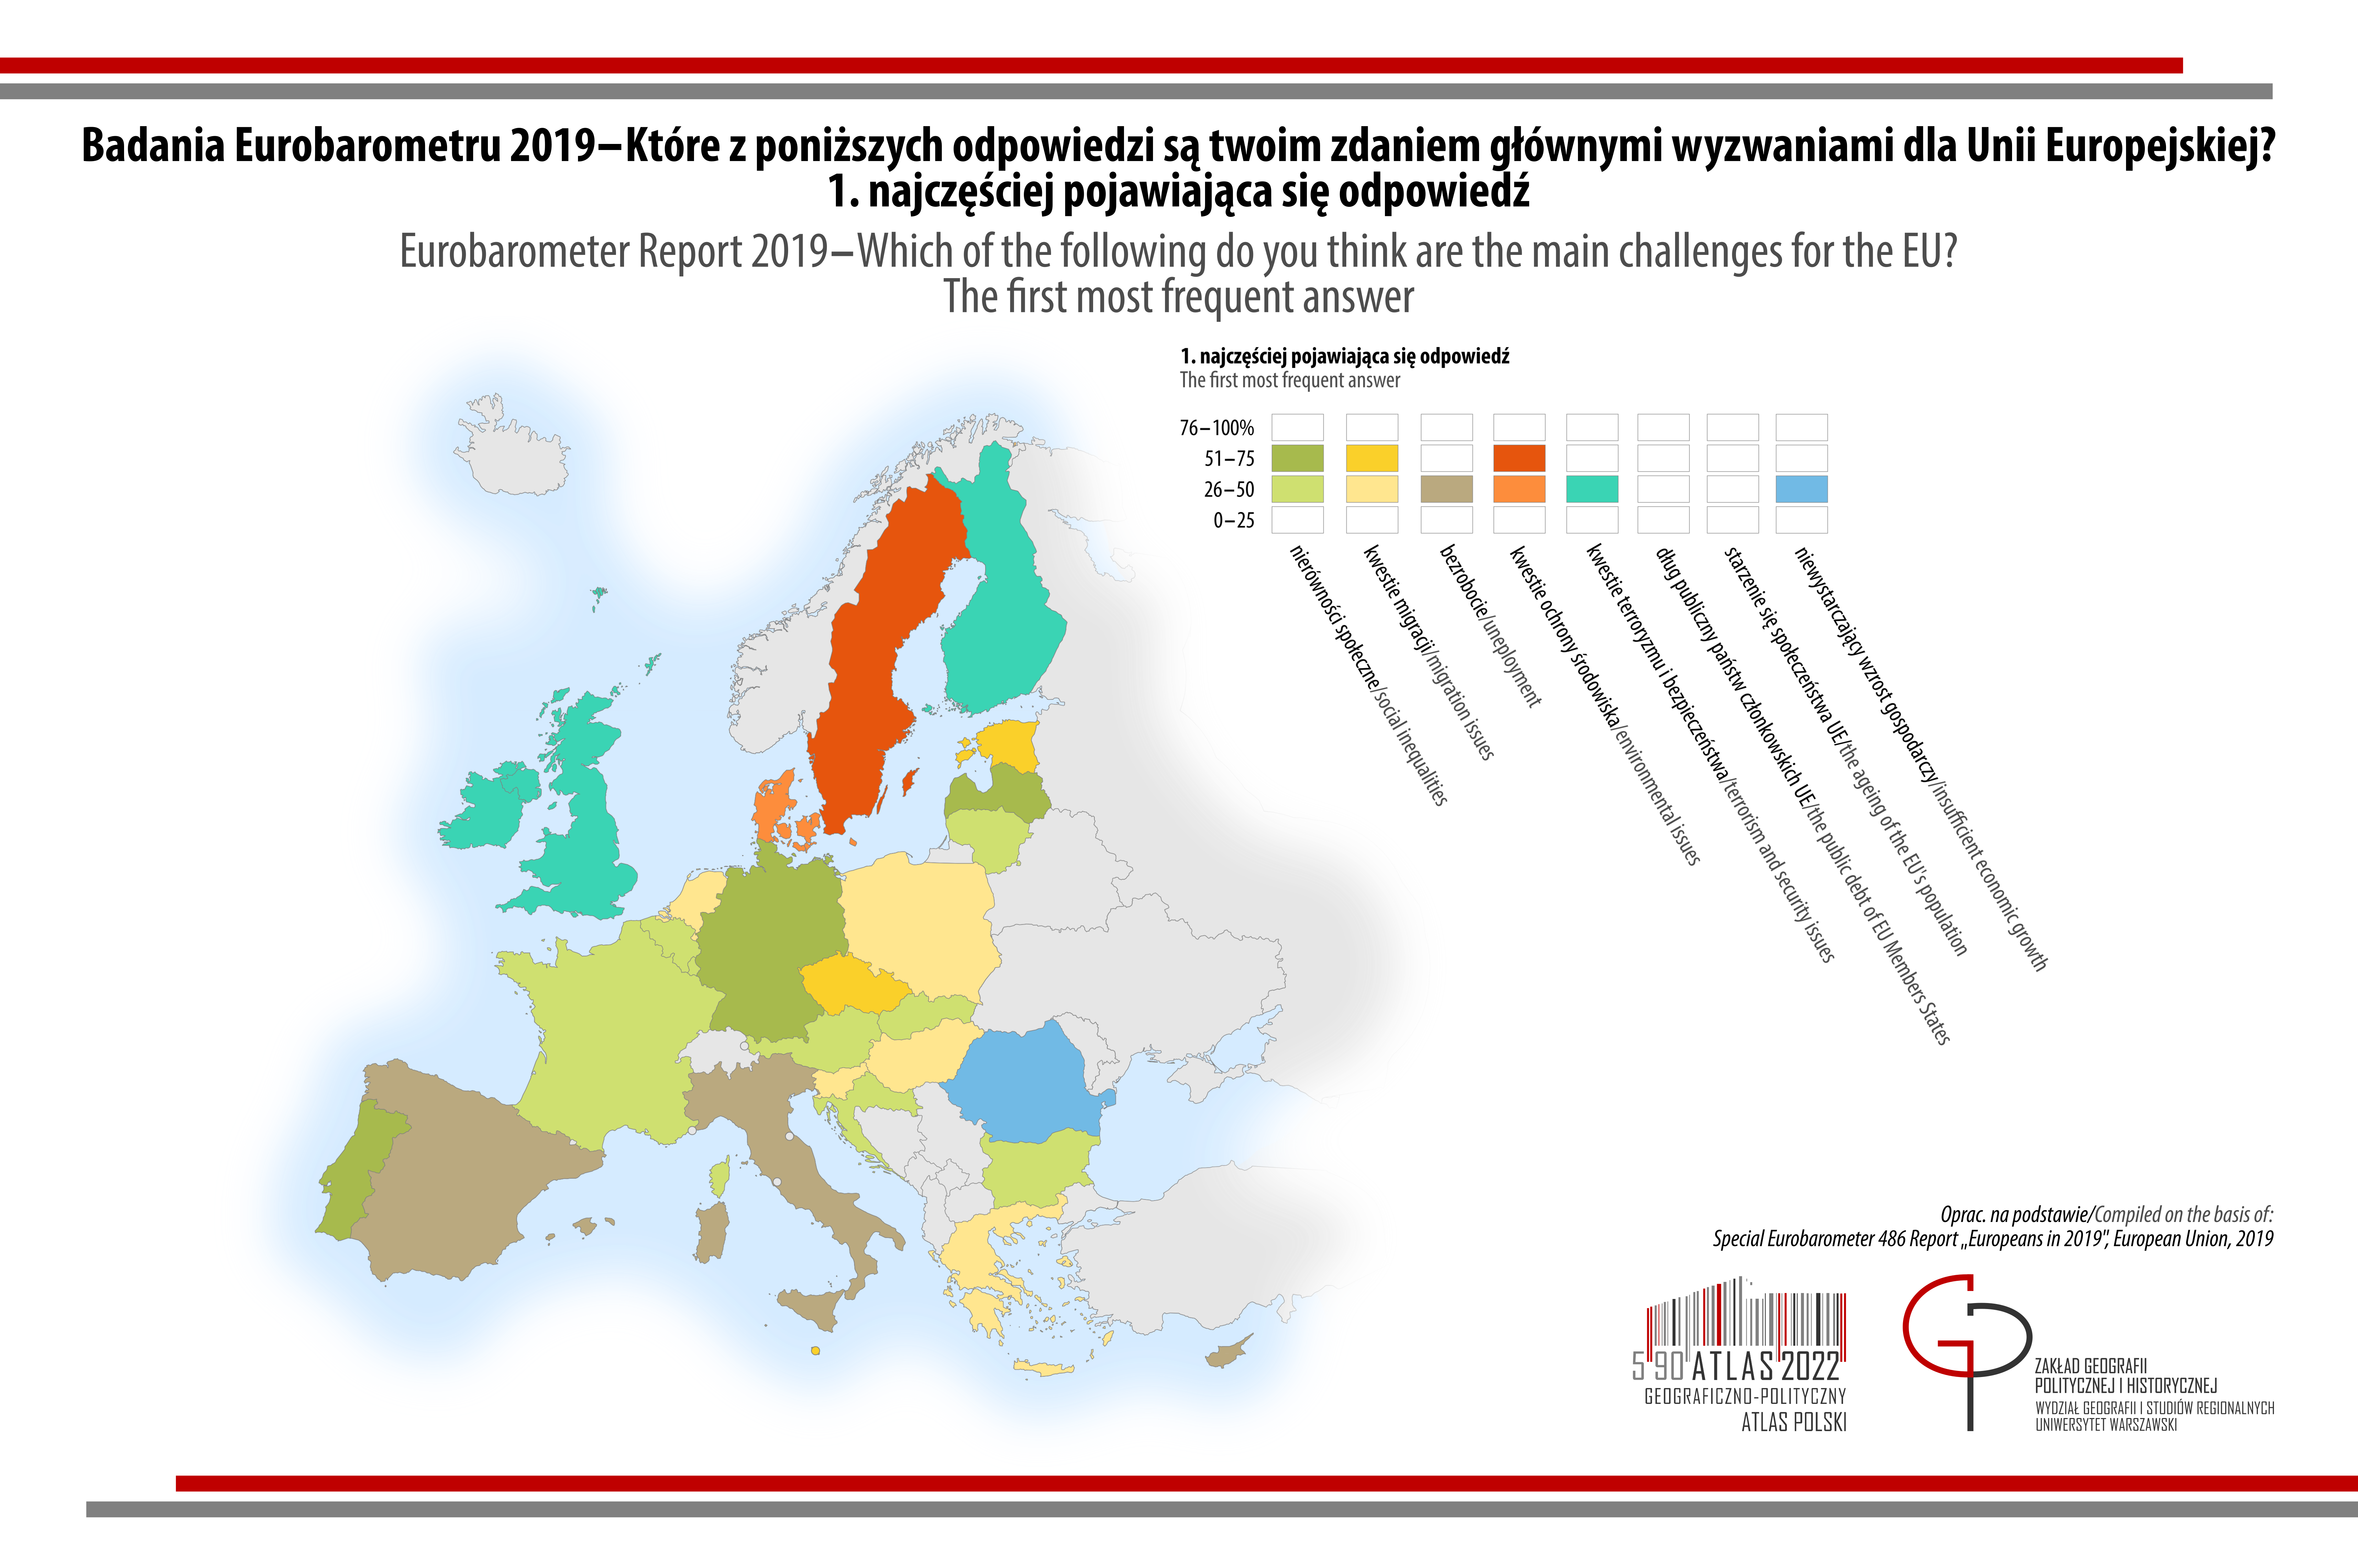 MAPA TYGODNIA: Eurobarometr: Które z poniższych odpowiedzi są Twoim zdaniem głównymi wyzwaniami dla Unii Europejskiej? Pierwsza najczęściej pojawiająca się odpowiedź.